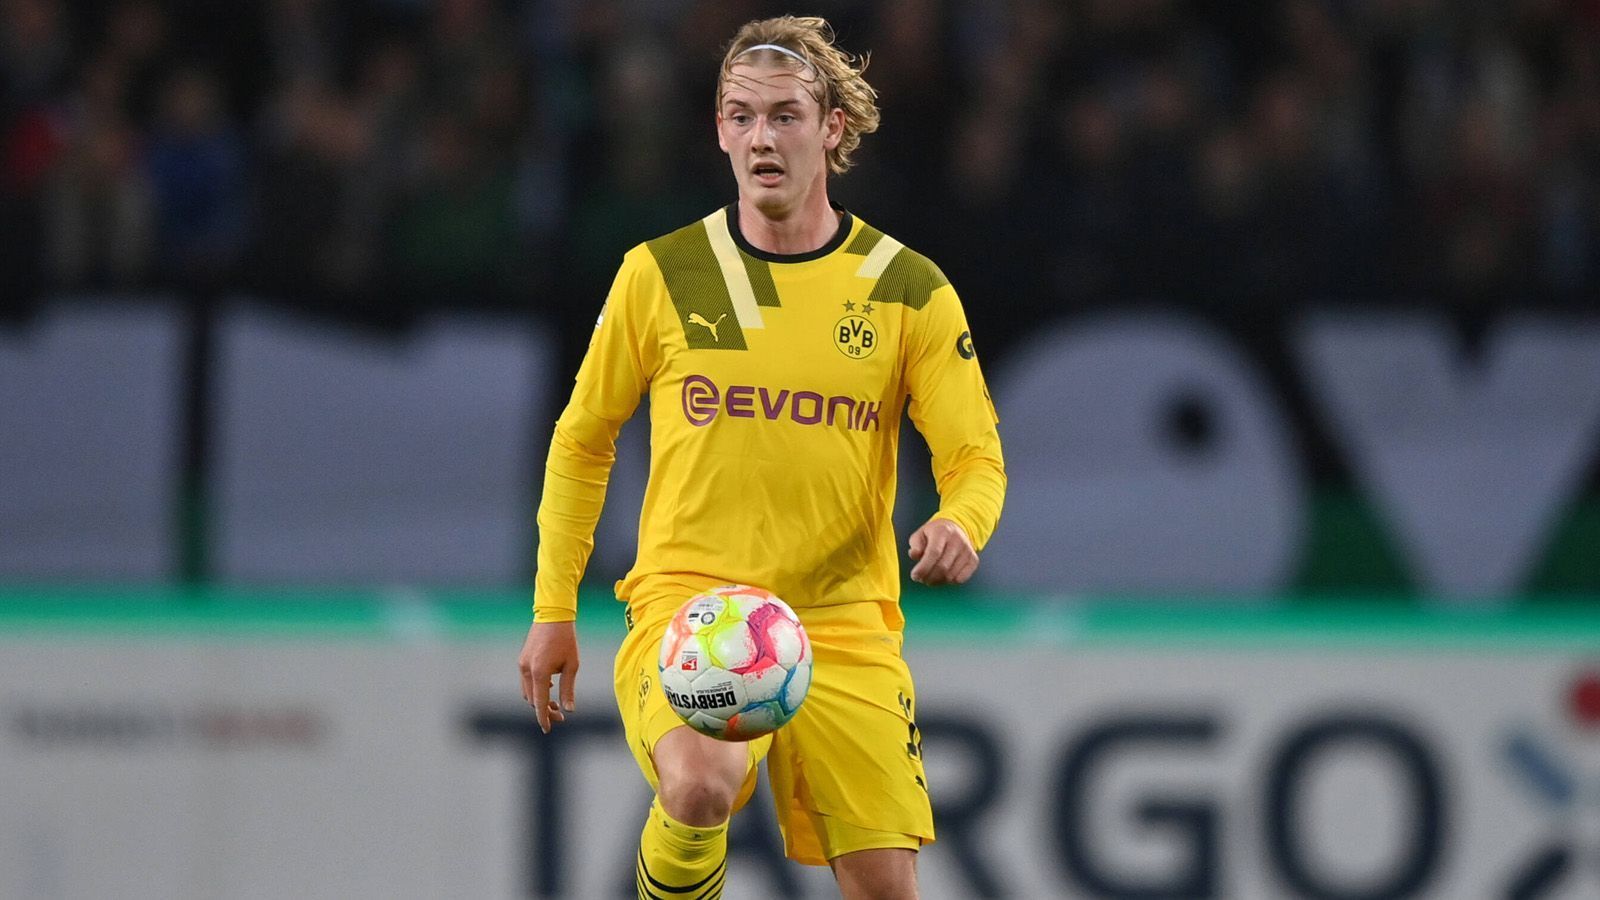 
                <strong>Julian Brandt (Borussia Dortmund)</strong><br>
                Vier Tore und zwei Vorlagen gelangen ihm in den zurückliegenden 15 Bundesligaspielen. Beim 2:4 gegen Borussia Mönchengladbach erzielte er den zwischenzeitlichen Ausgleich zum 1:1 und zählte noch zu den besten BVB-Spielern auf dem Platz. Zuvor war er aber beim 0:2 gegen den VfL Wolfsburg kein Faktor.
              